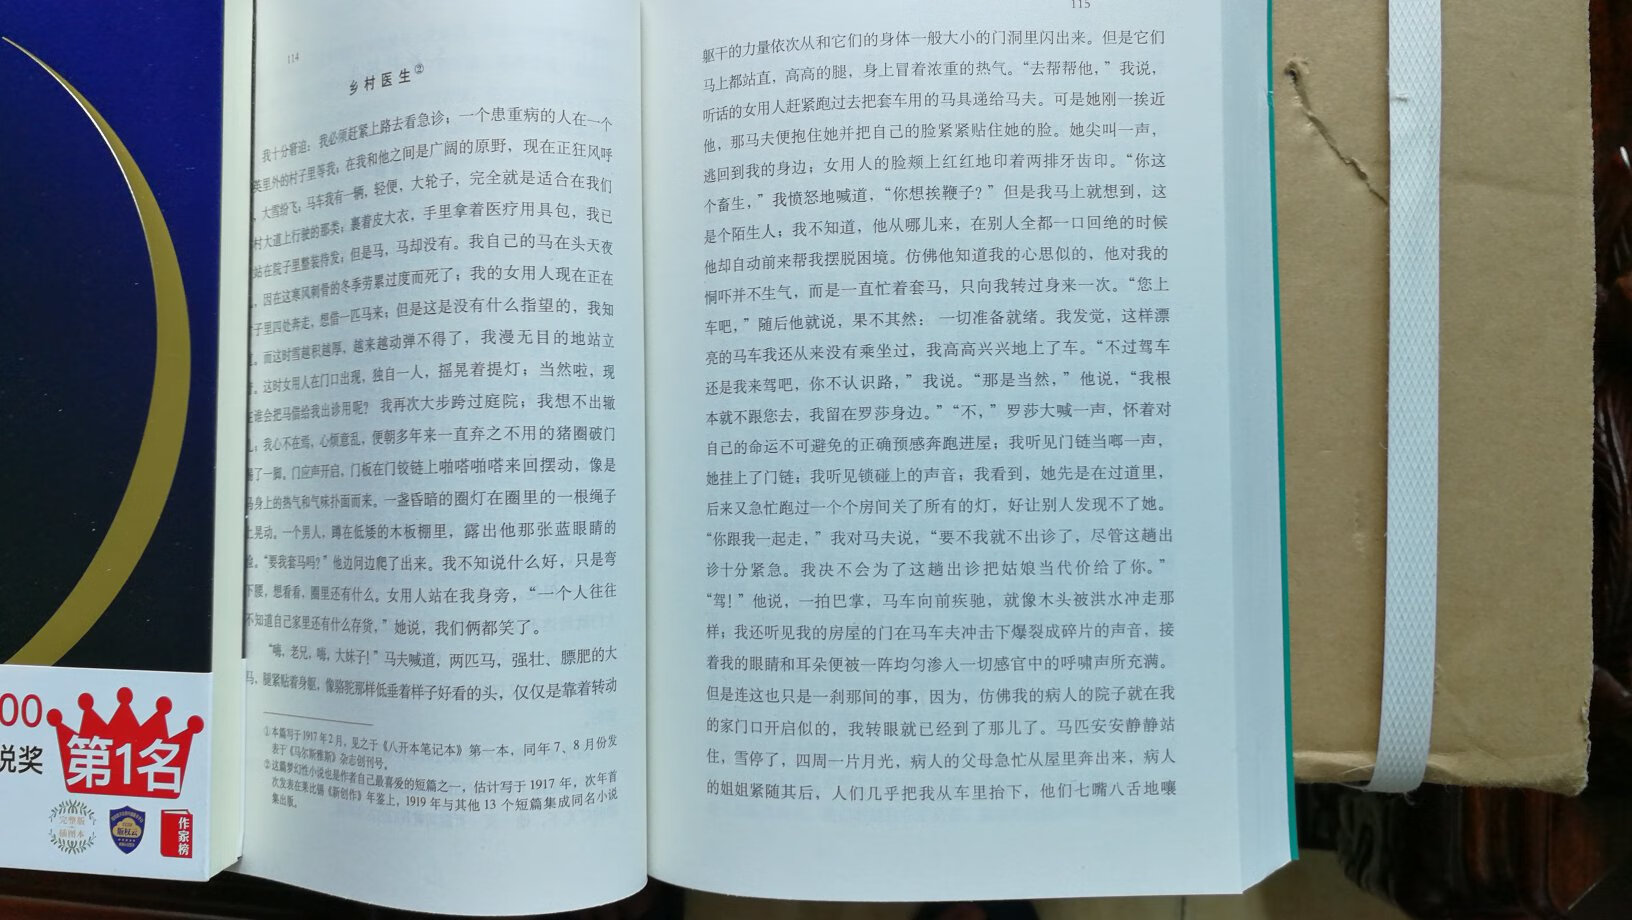 2018年6月第1版第1次印刷，上海译文出版社出版，变形记一一卡夫卡中短篇小说全集。作者卡夫卡犹太血统，说不尽的卡夫卡，本书完美地把一个比较全面、正确的卡夫卡呈献给我国广大读者。